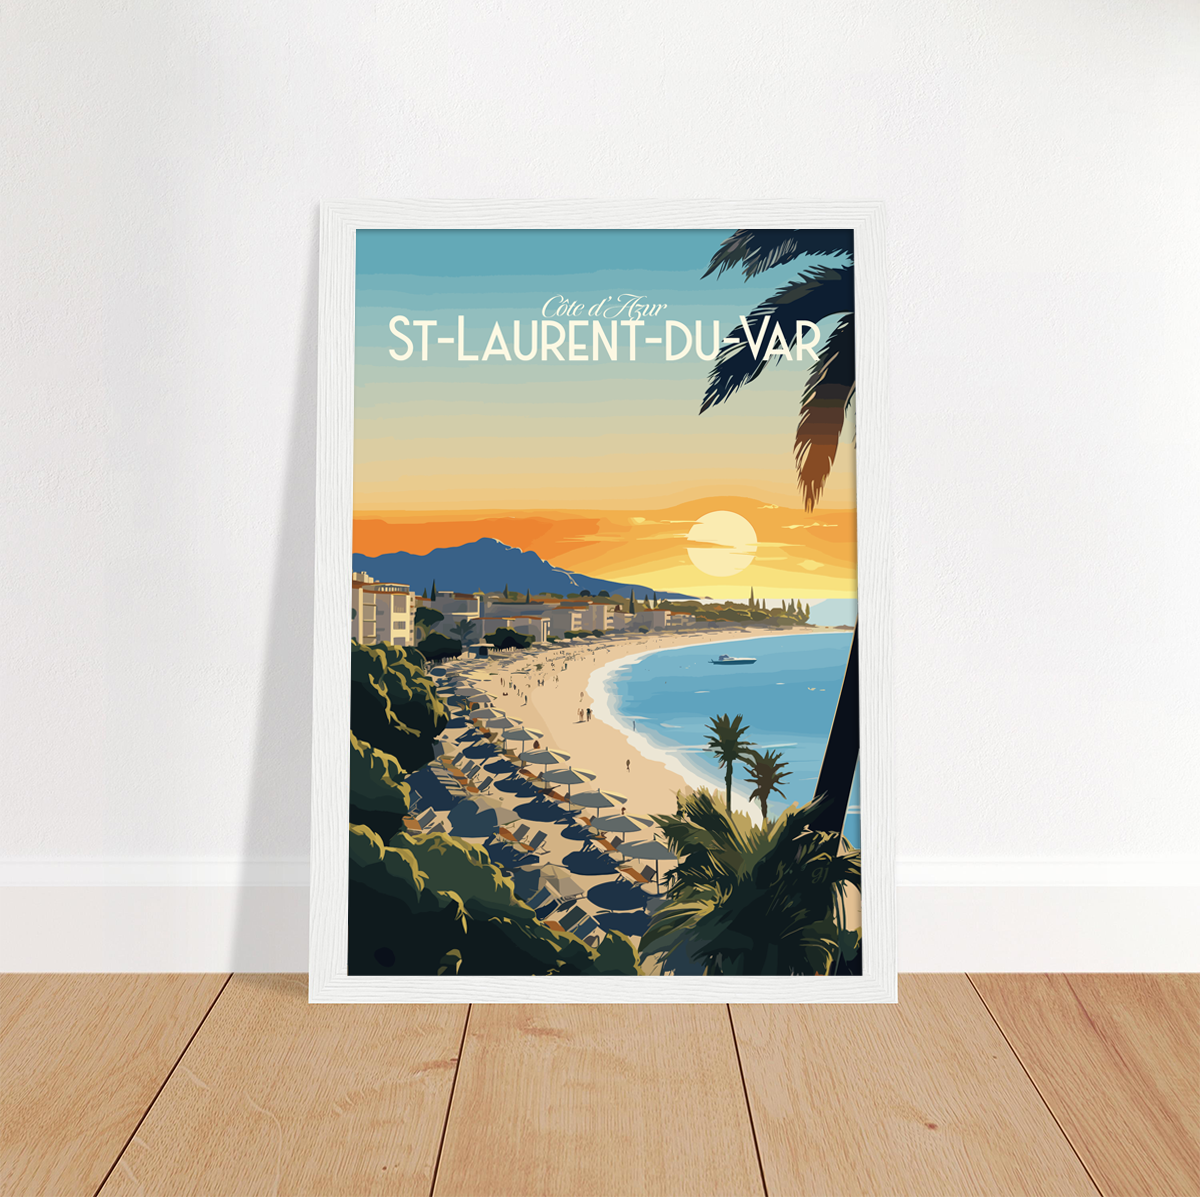 St-Laurent-du-Var poster by bon voyage design